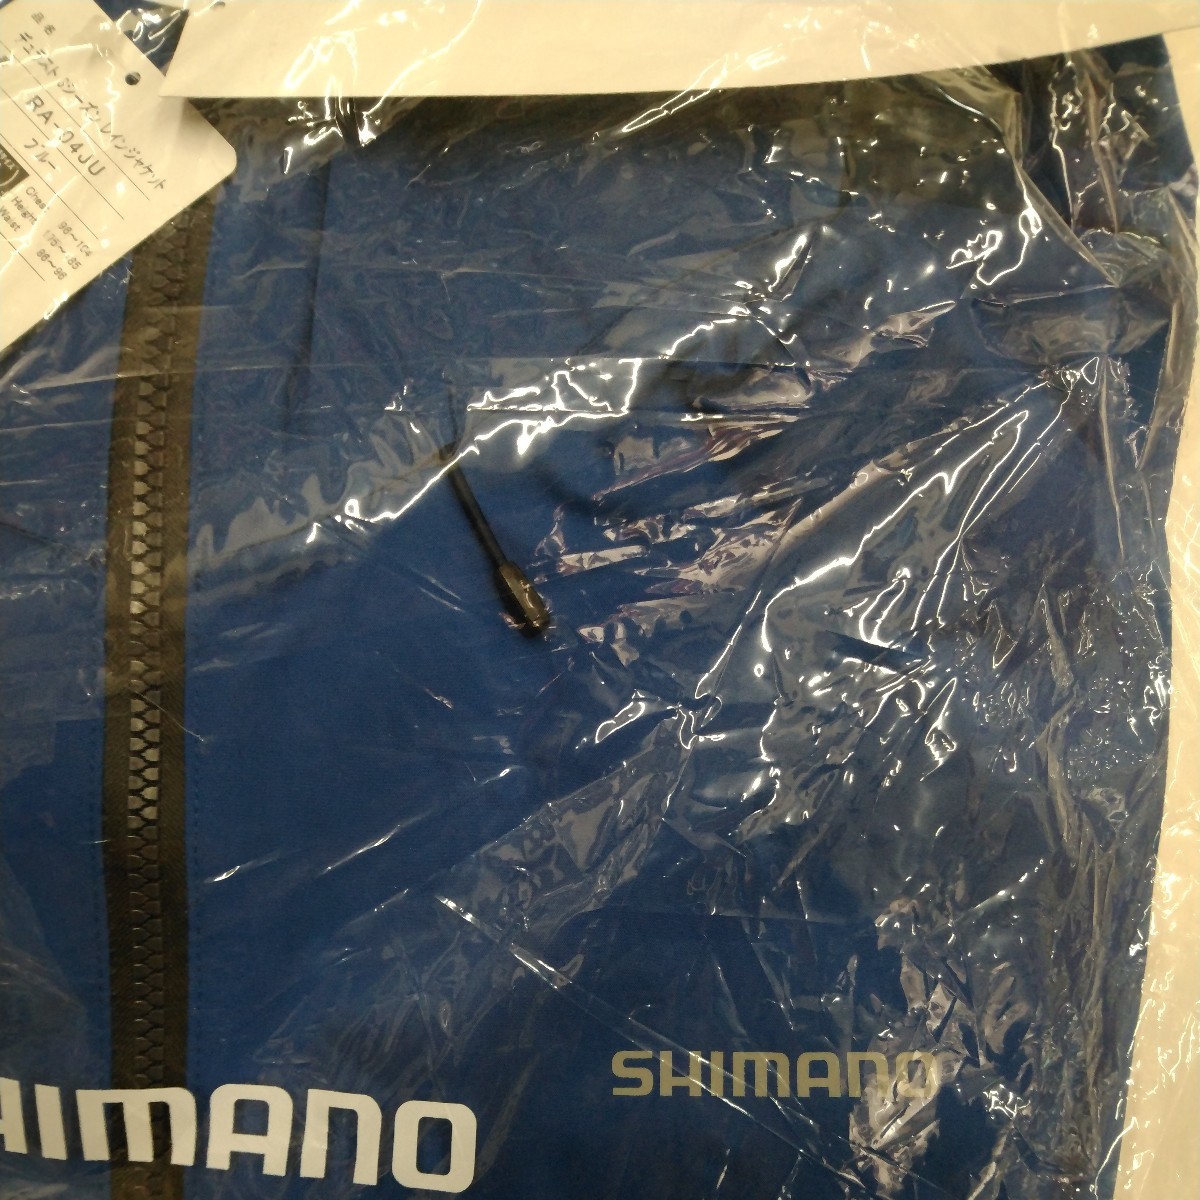  новый товар Shimano SHIMANO RA-04JU Duras to3 season дождь жакет голубой размер XL обычная цена 20000 иен непромокаемый костюм 